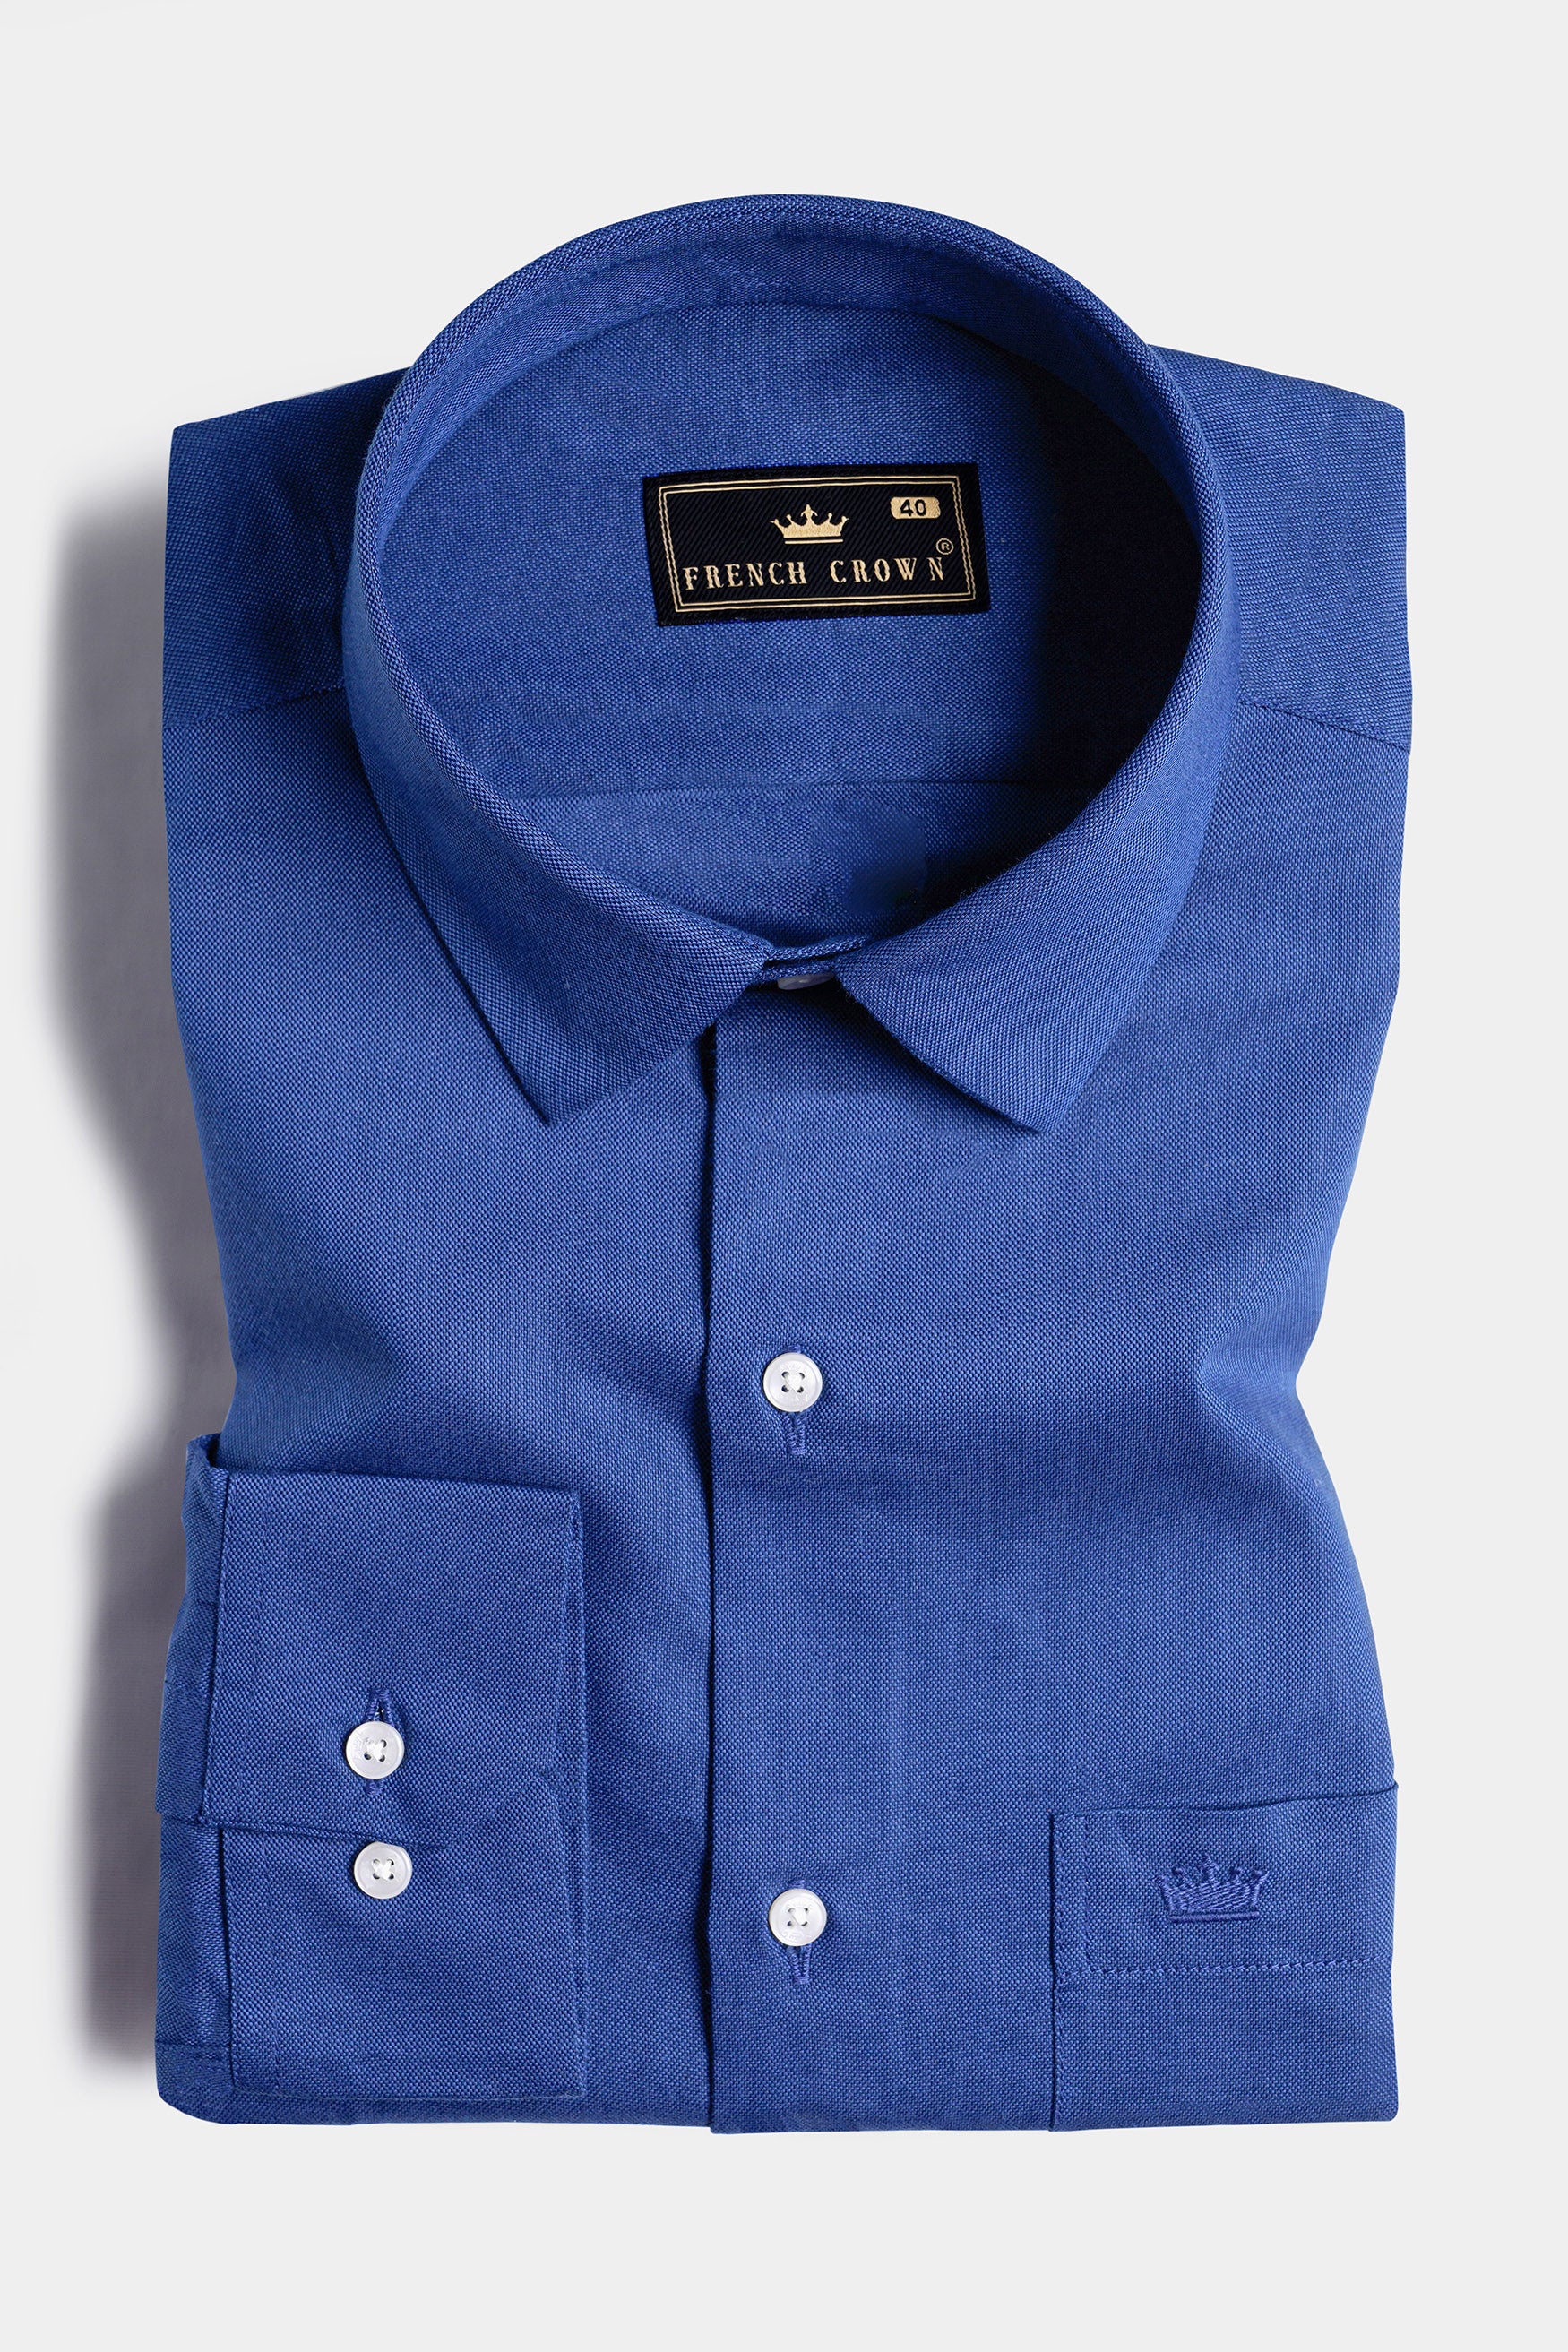 Yonder Blue Royal Oxford Shirt